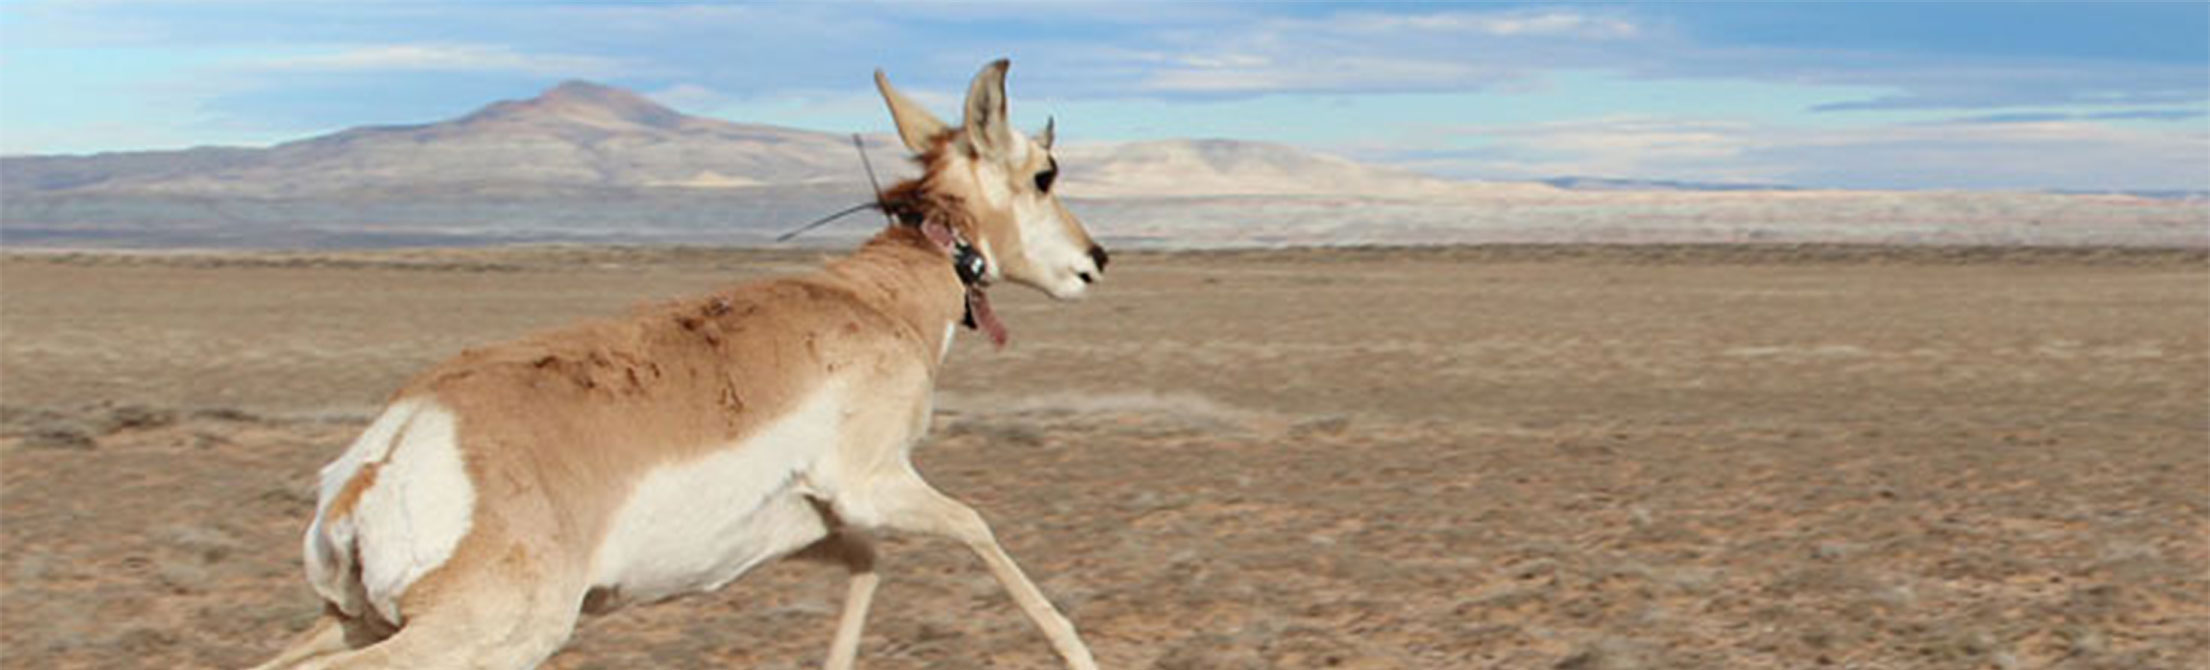 Antelope in Red Desert